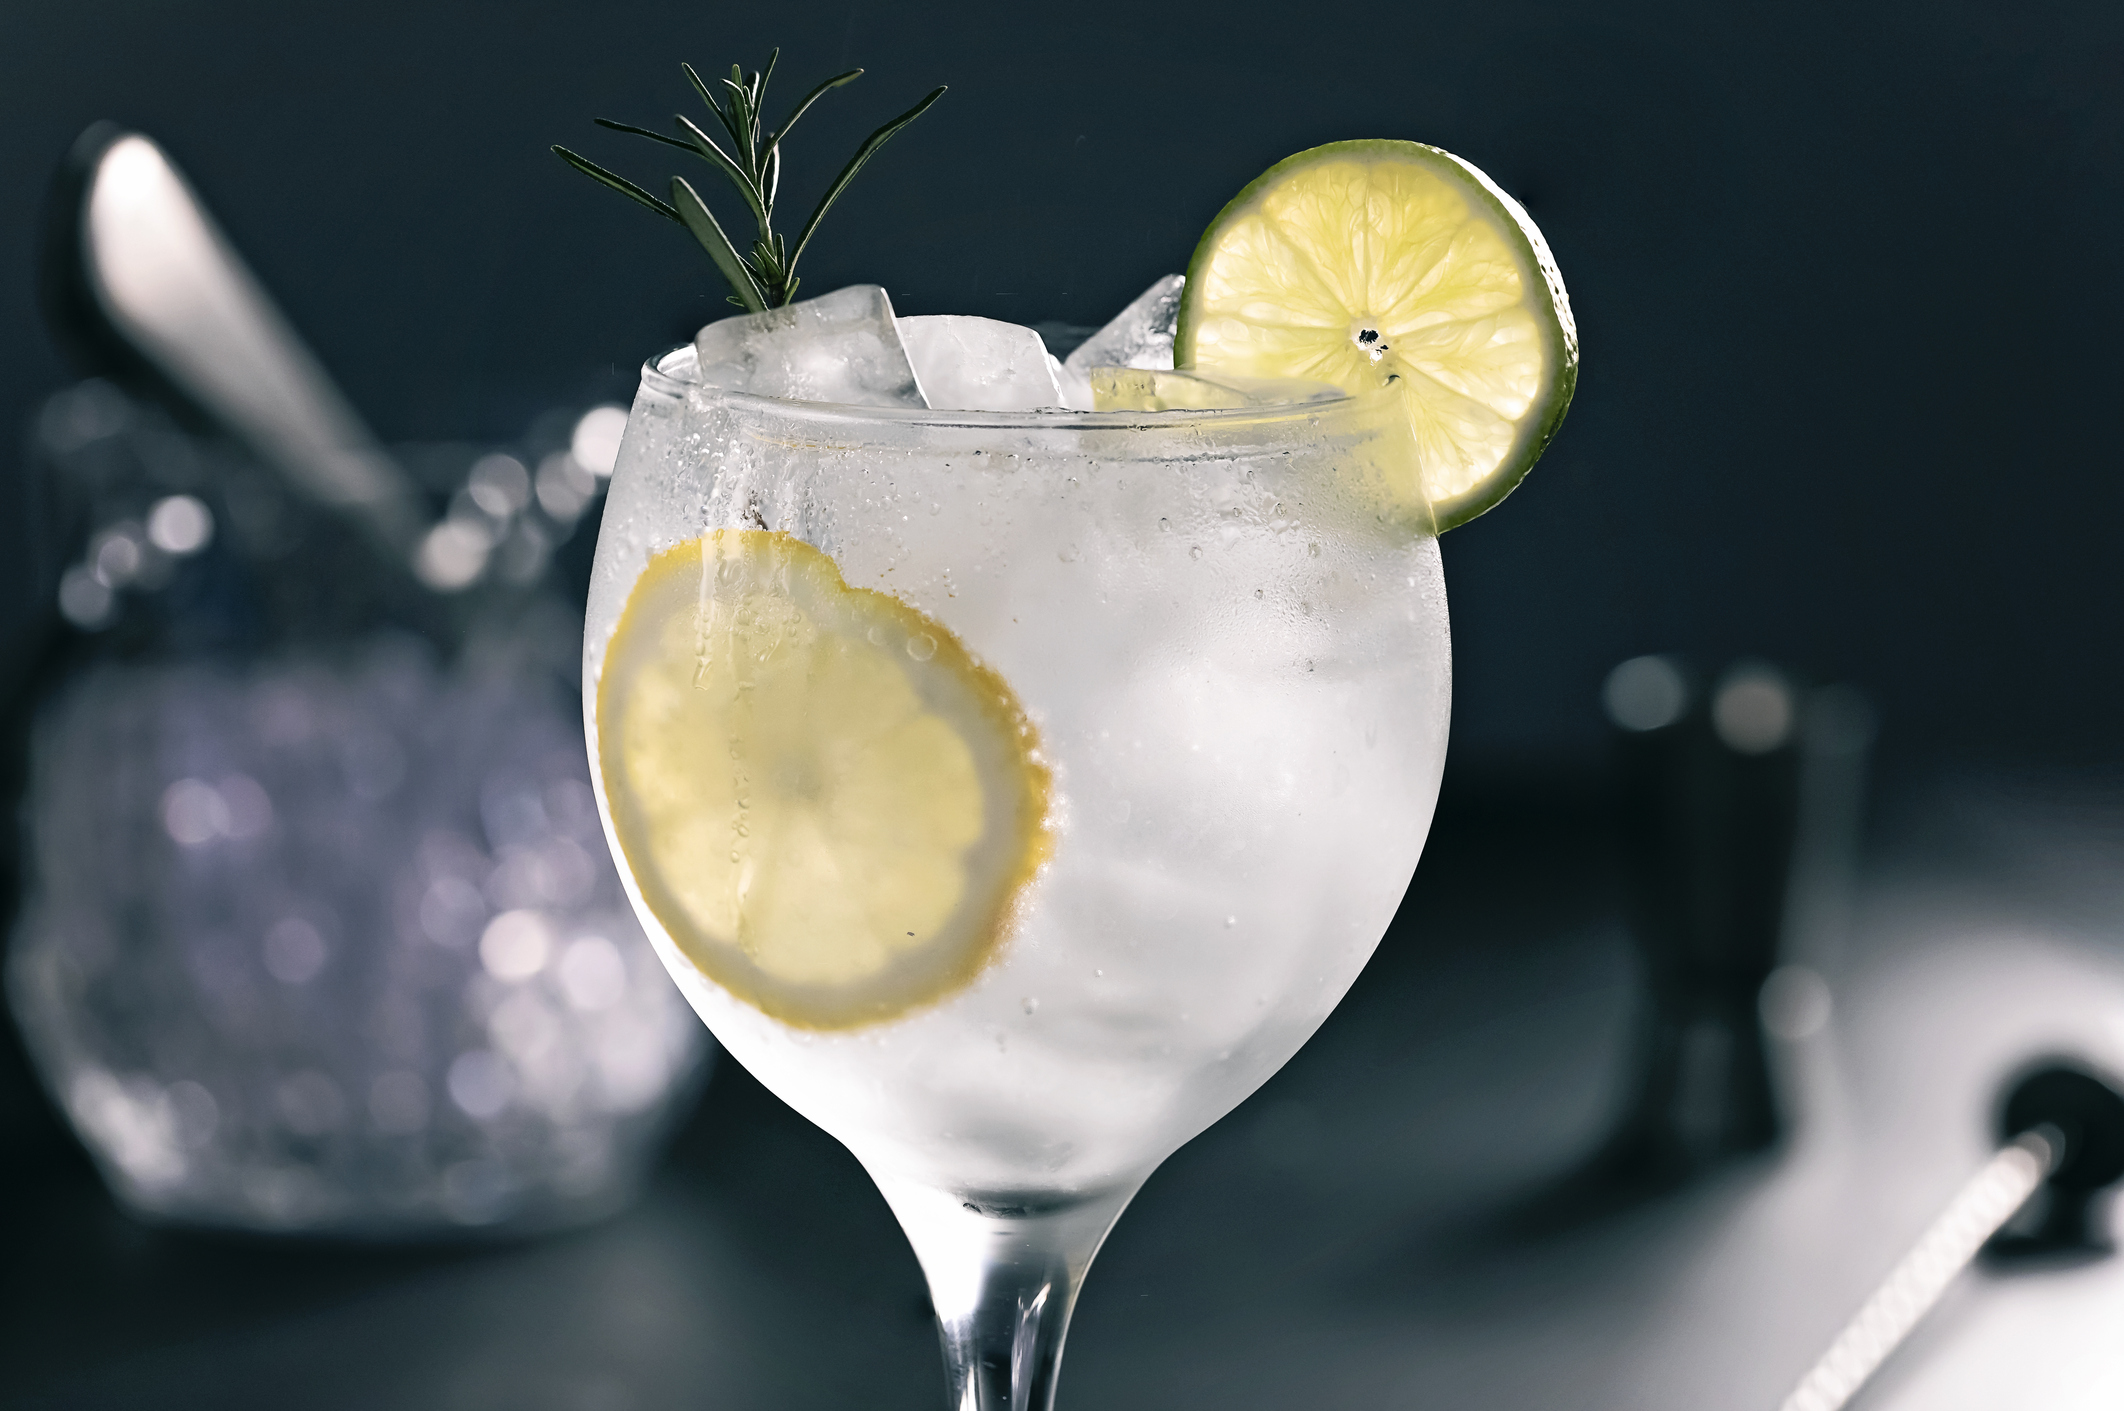 "Es una bebida fresca y tiene su estacionalidad en la temporada estival", dijo Varea sobre el furor del gin tonic en verano (Getty)